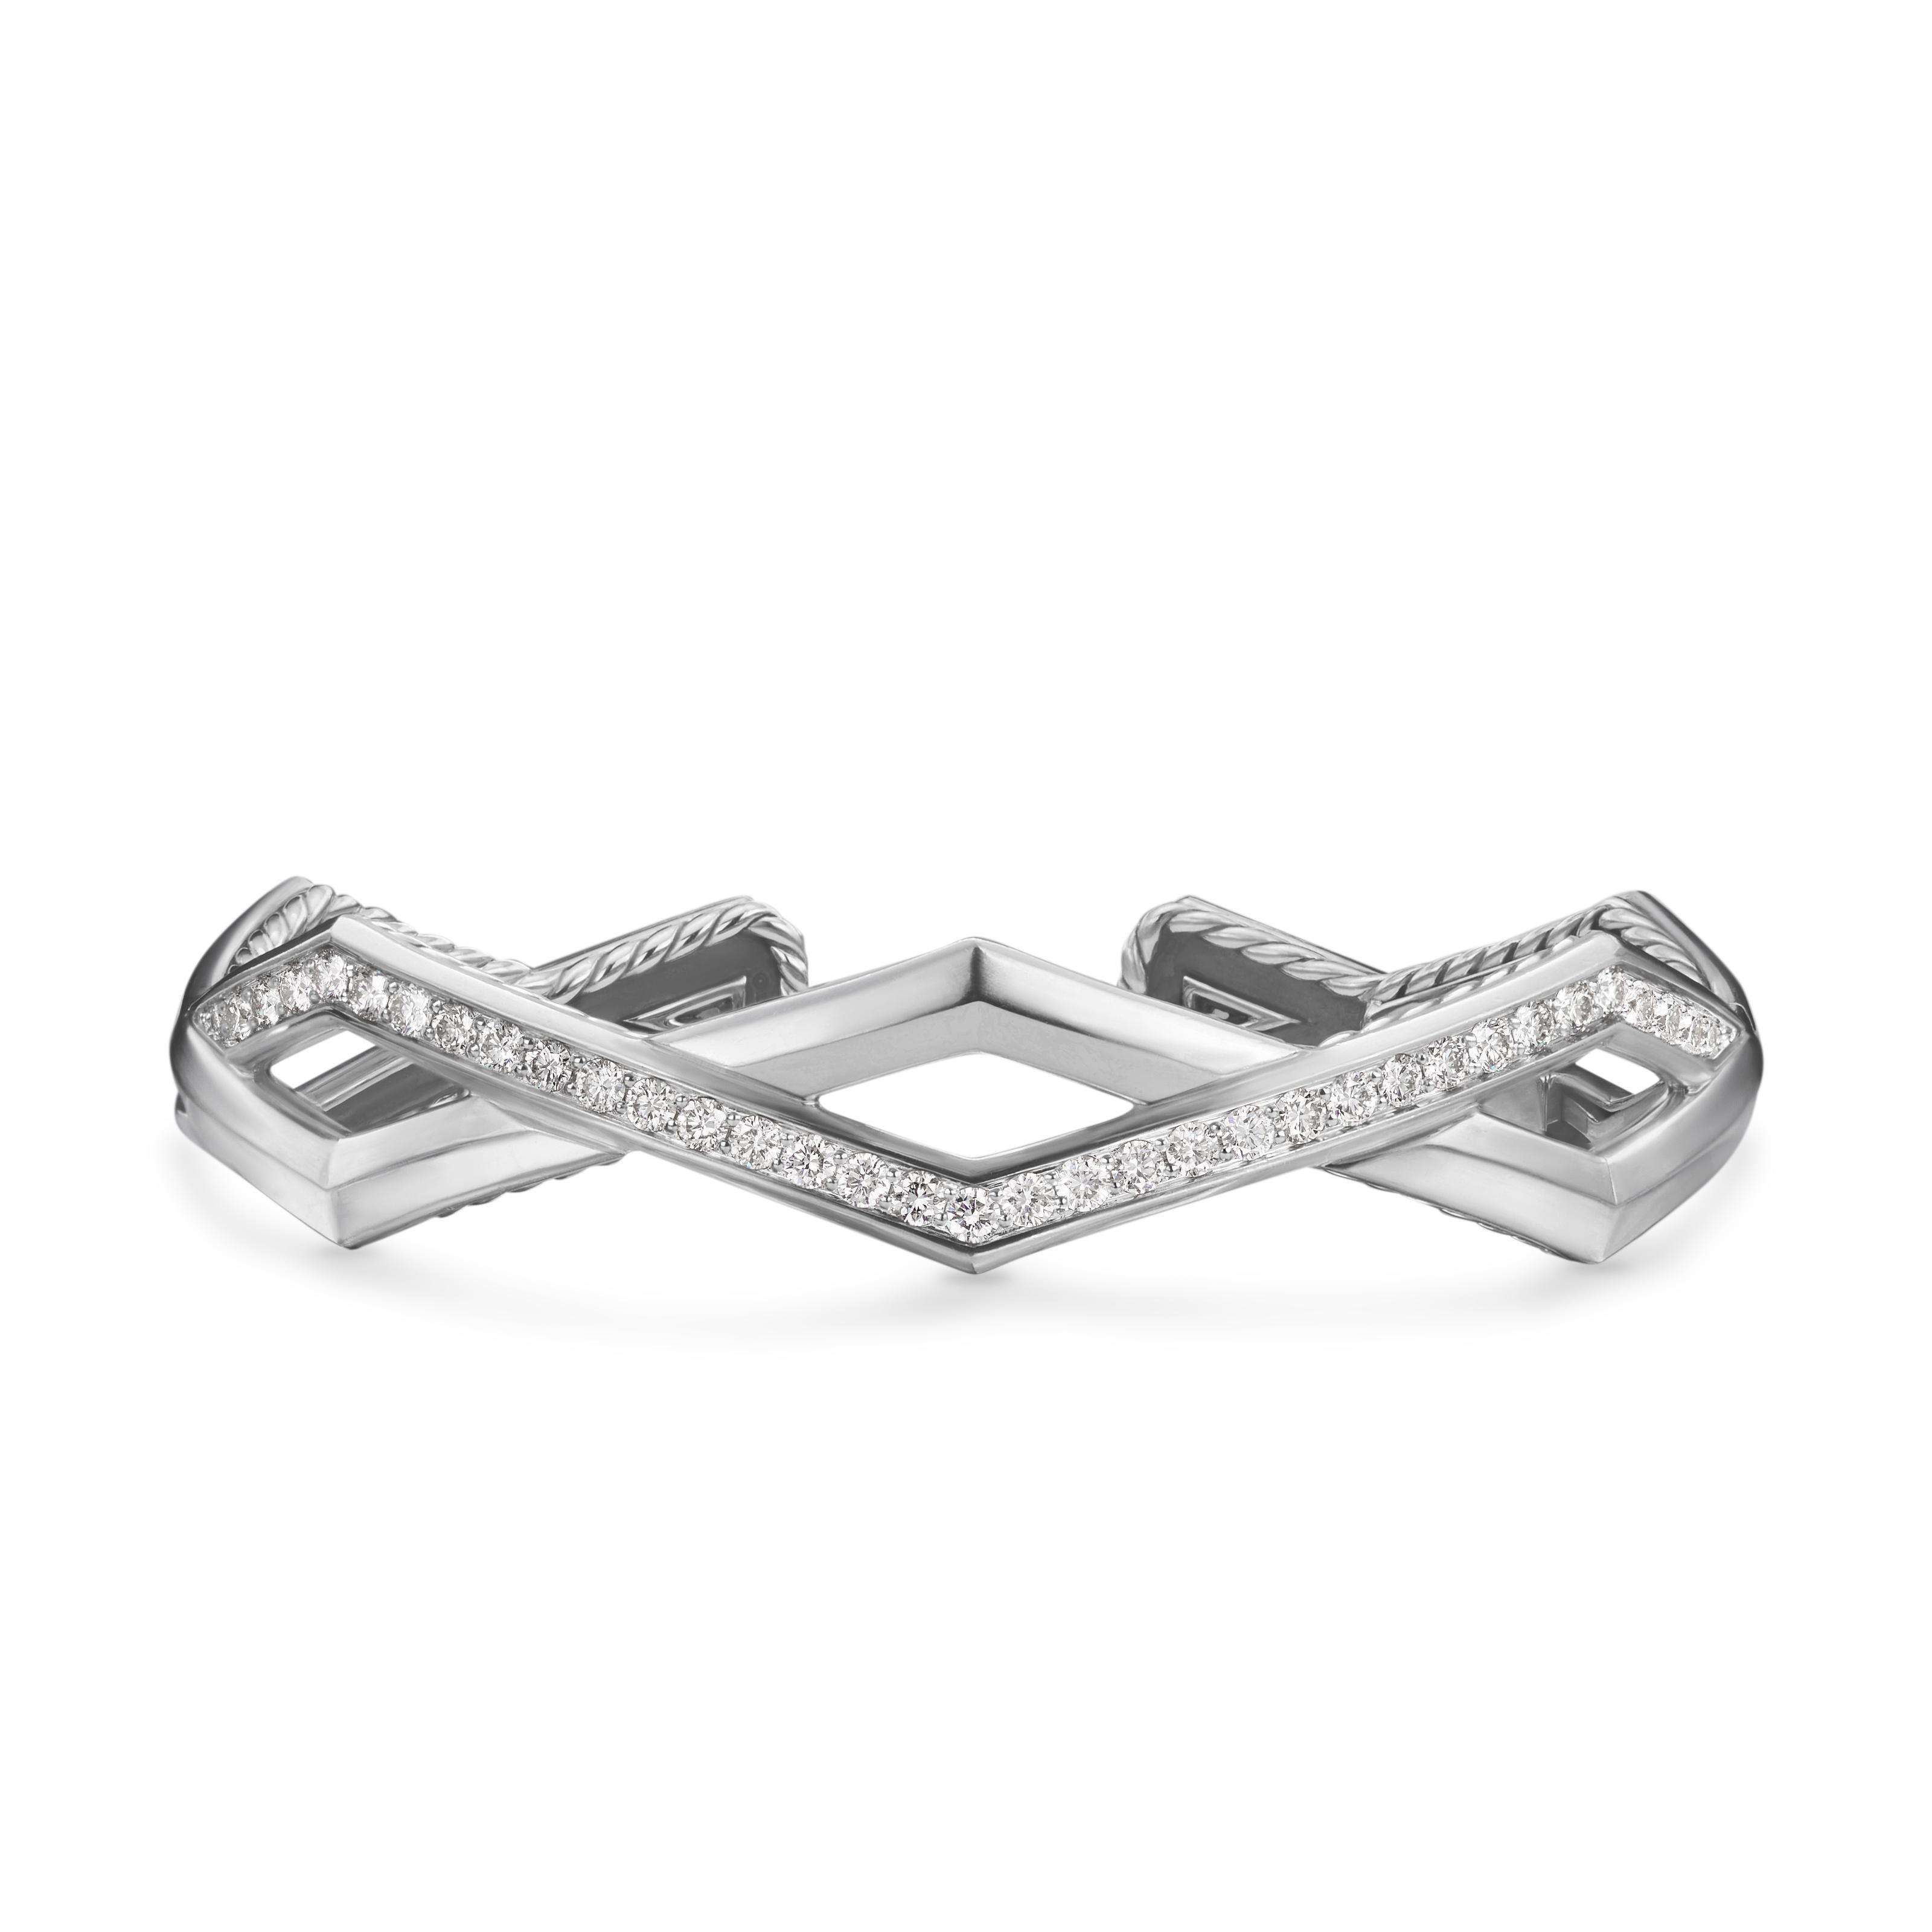 David Yurman Zig Zag Stax Two Row Cuff Bracelet in Sterling Silver with Diamonds